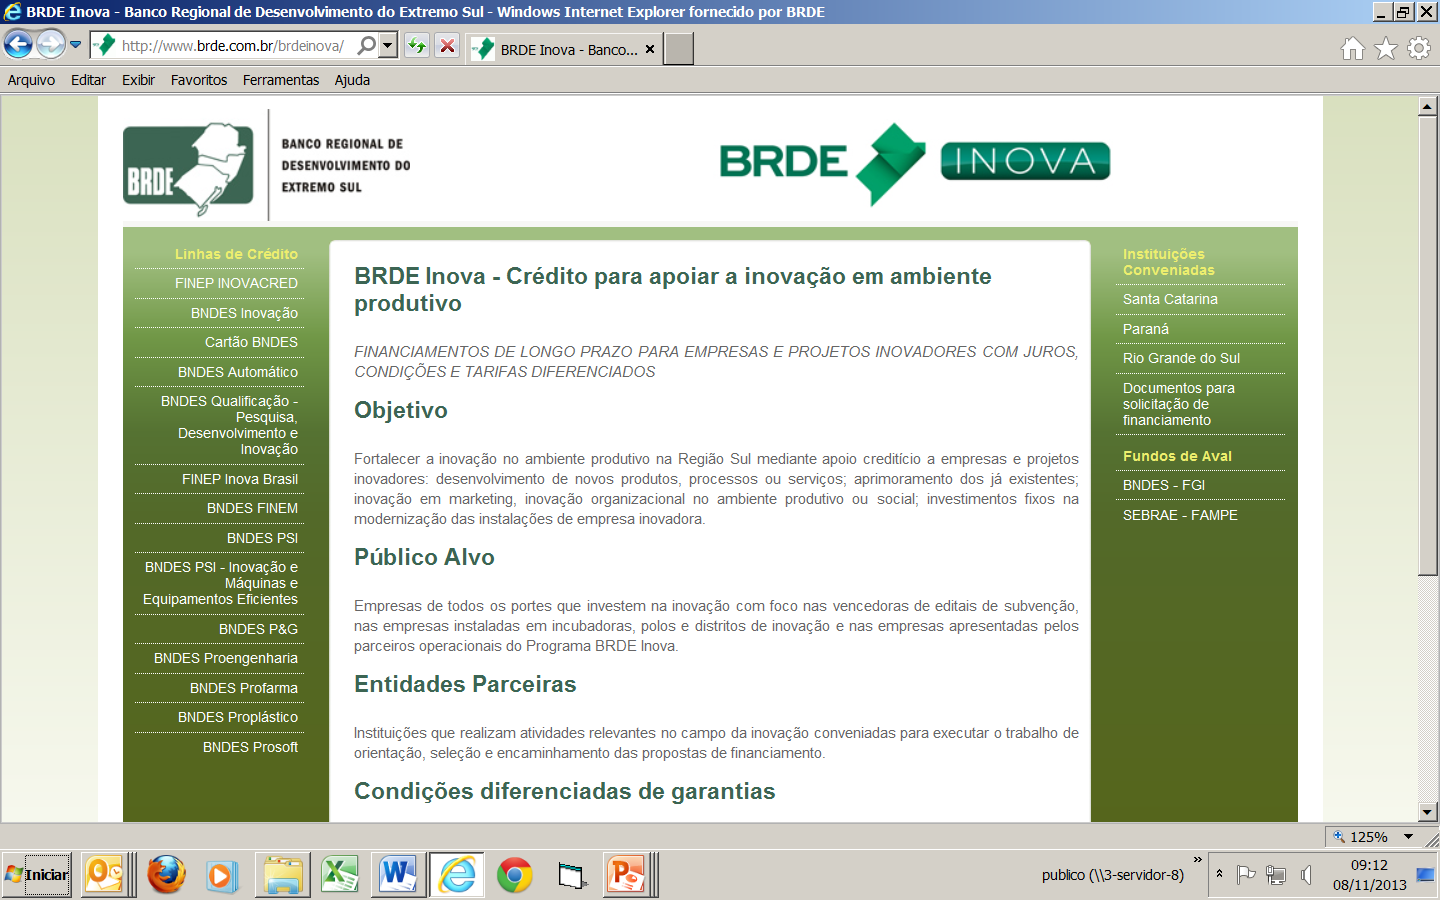 www.brde.com.br/brdeinova/ MUITO OBRIGADO!